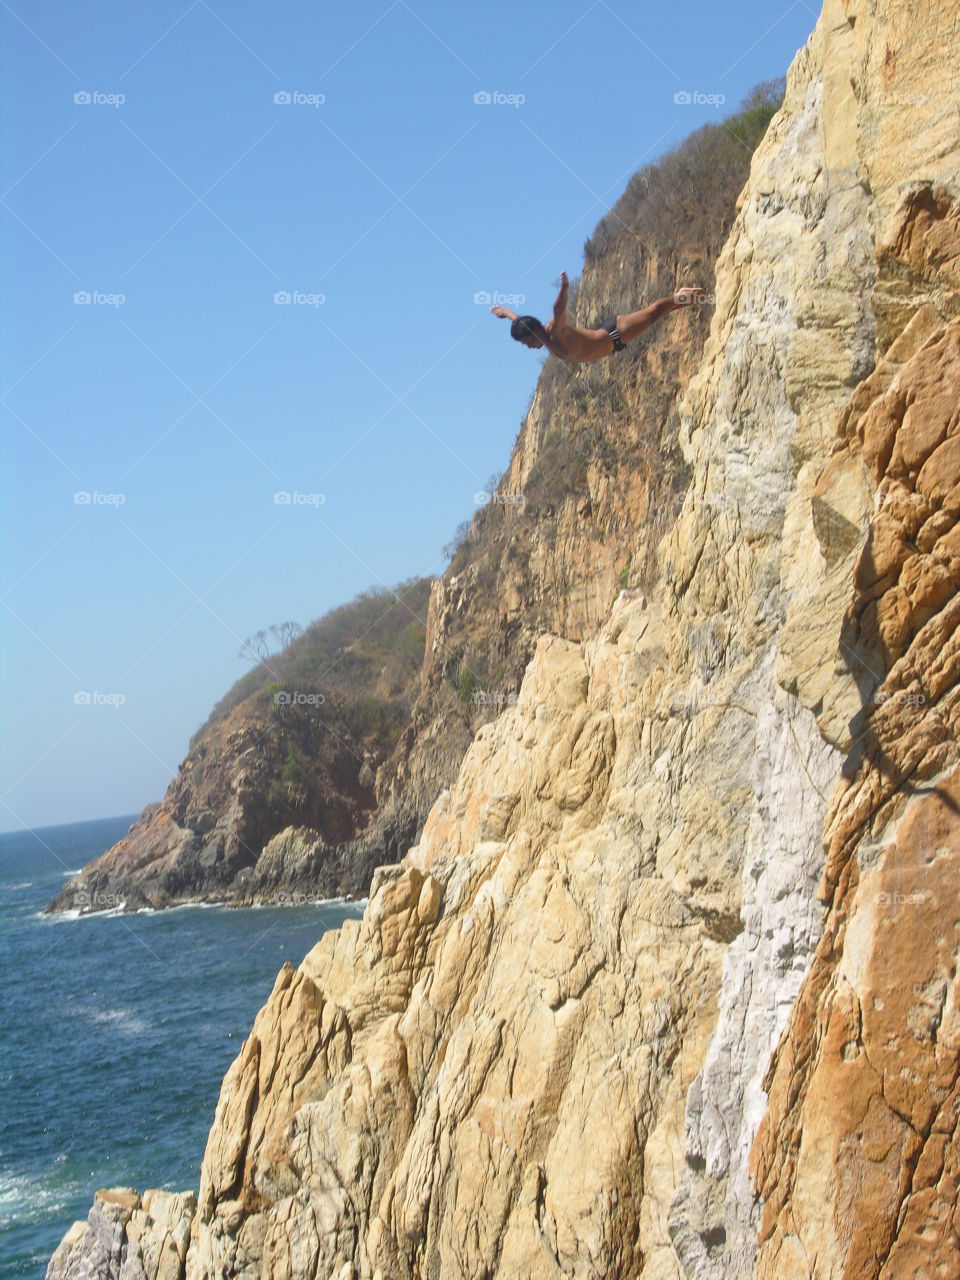 Mexico - Acapulco. Experience behind rocks called El Quebrada